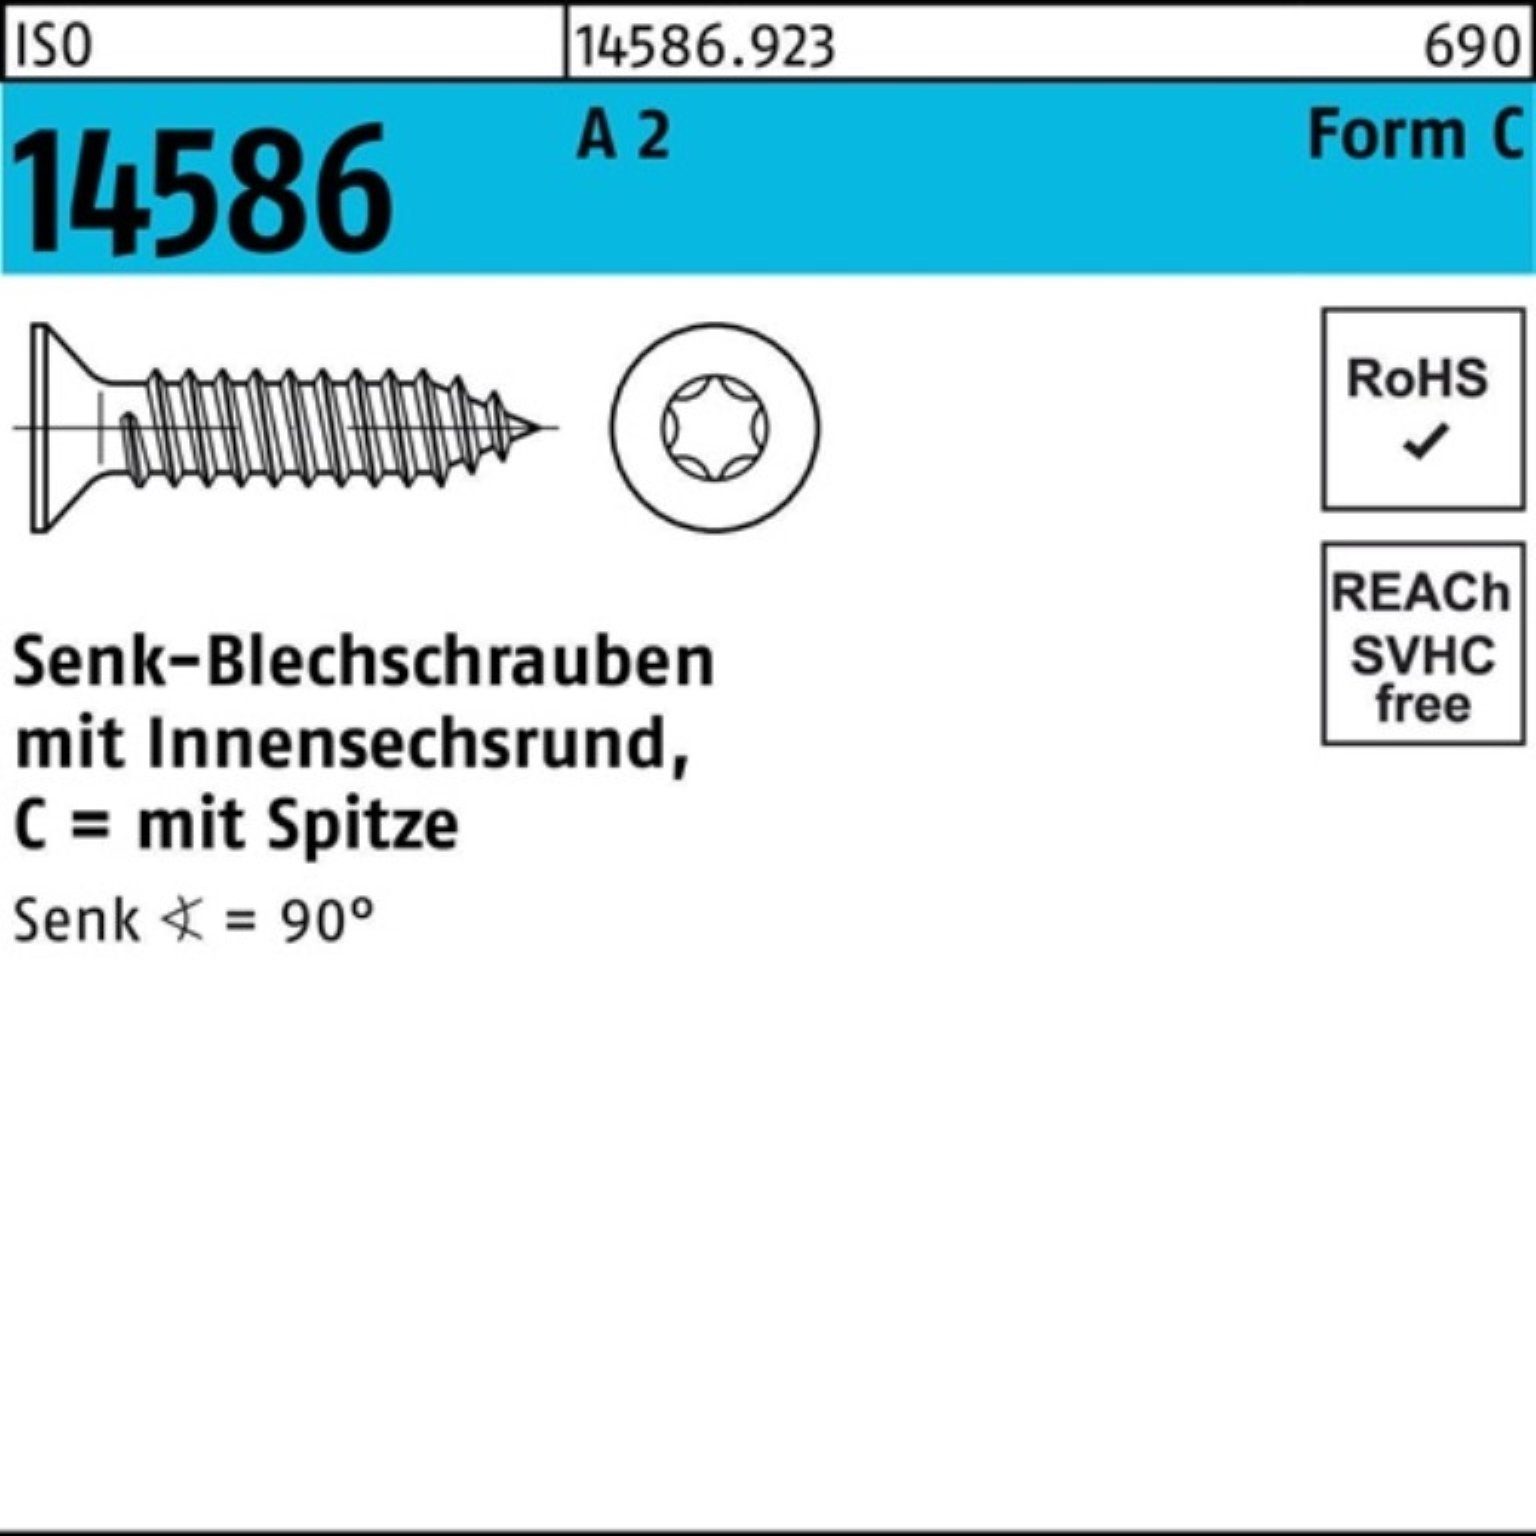 Pack Reyher ISO 2 2 ISR/Spitze 6,3x A T30 250er 70 Schraube -C Senkblechschraube 14586